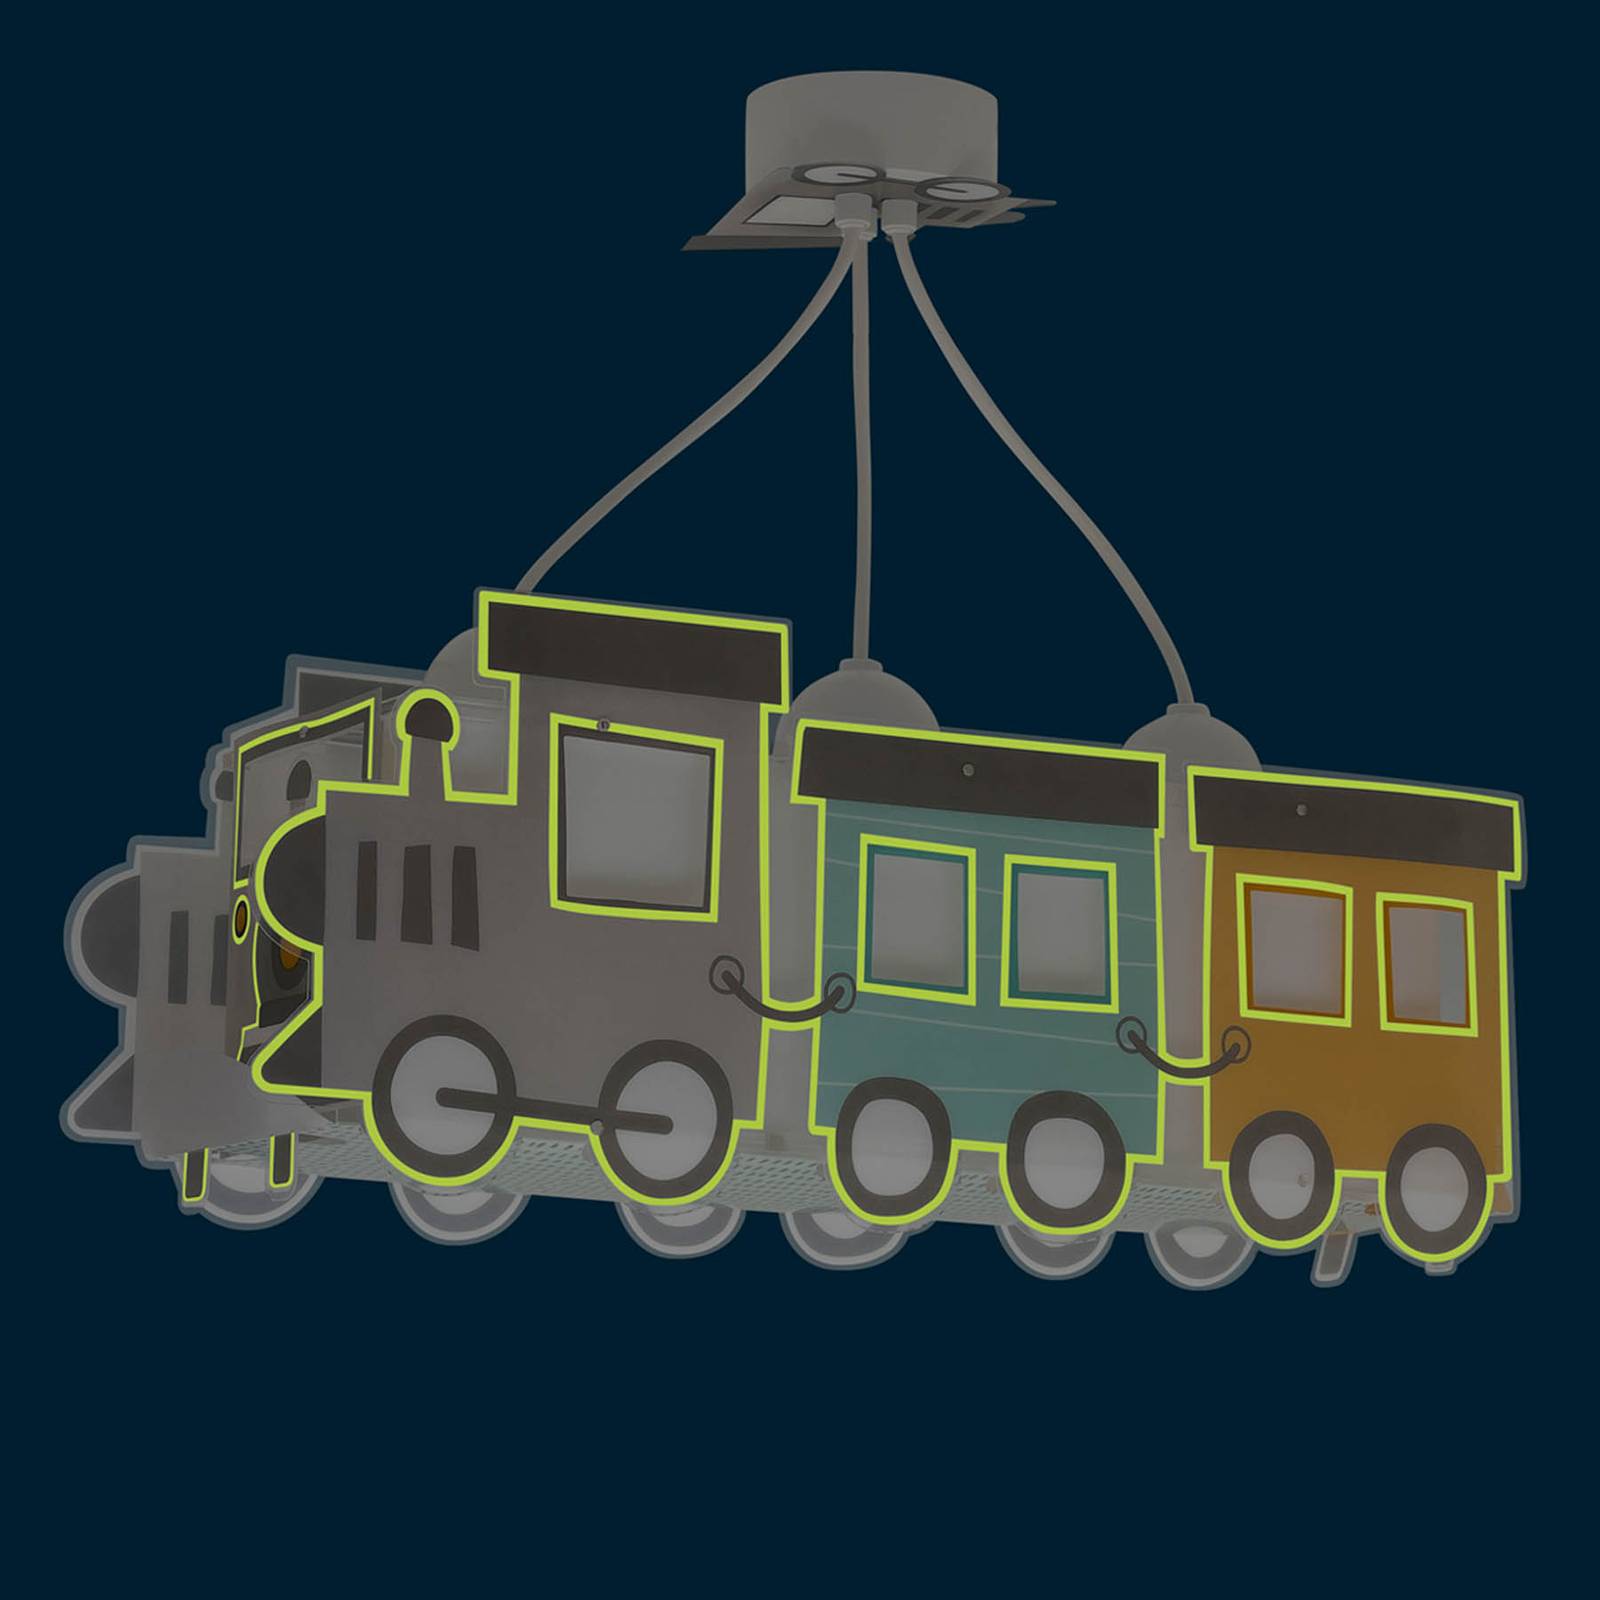 Image of Dalber Night Train a sospensione a locomotiva